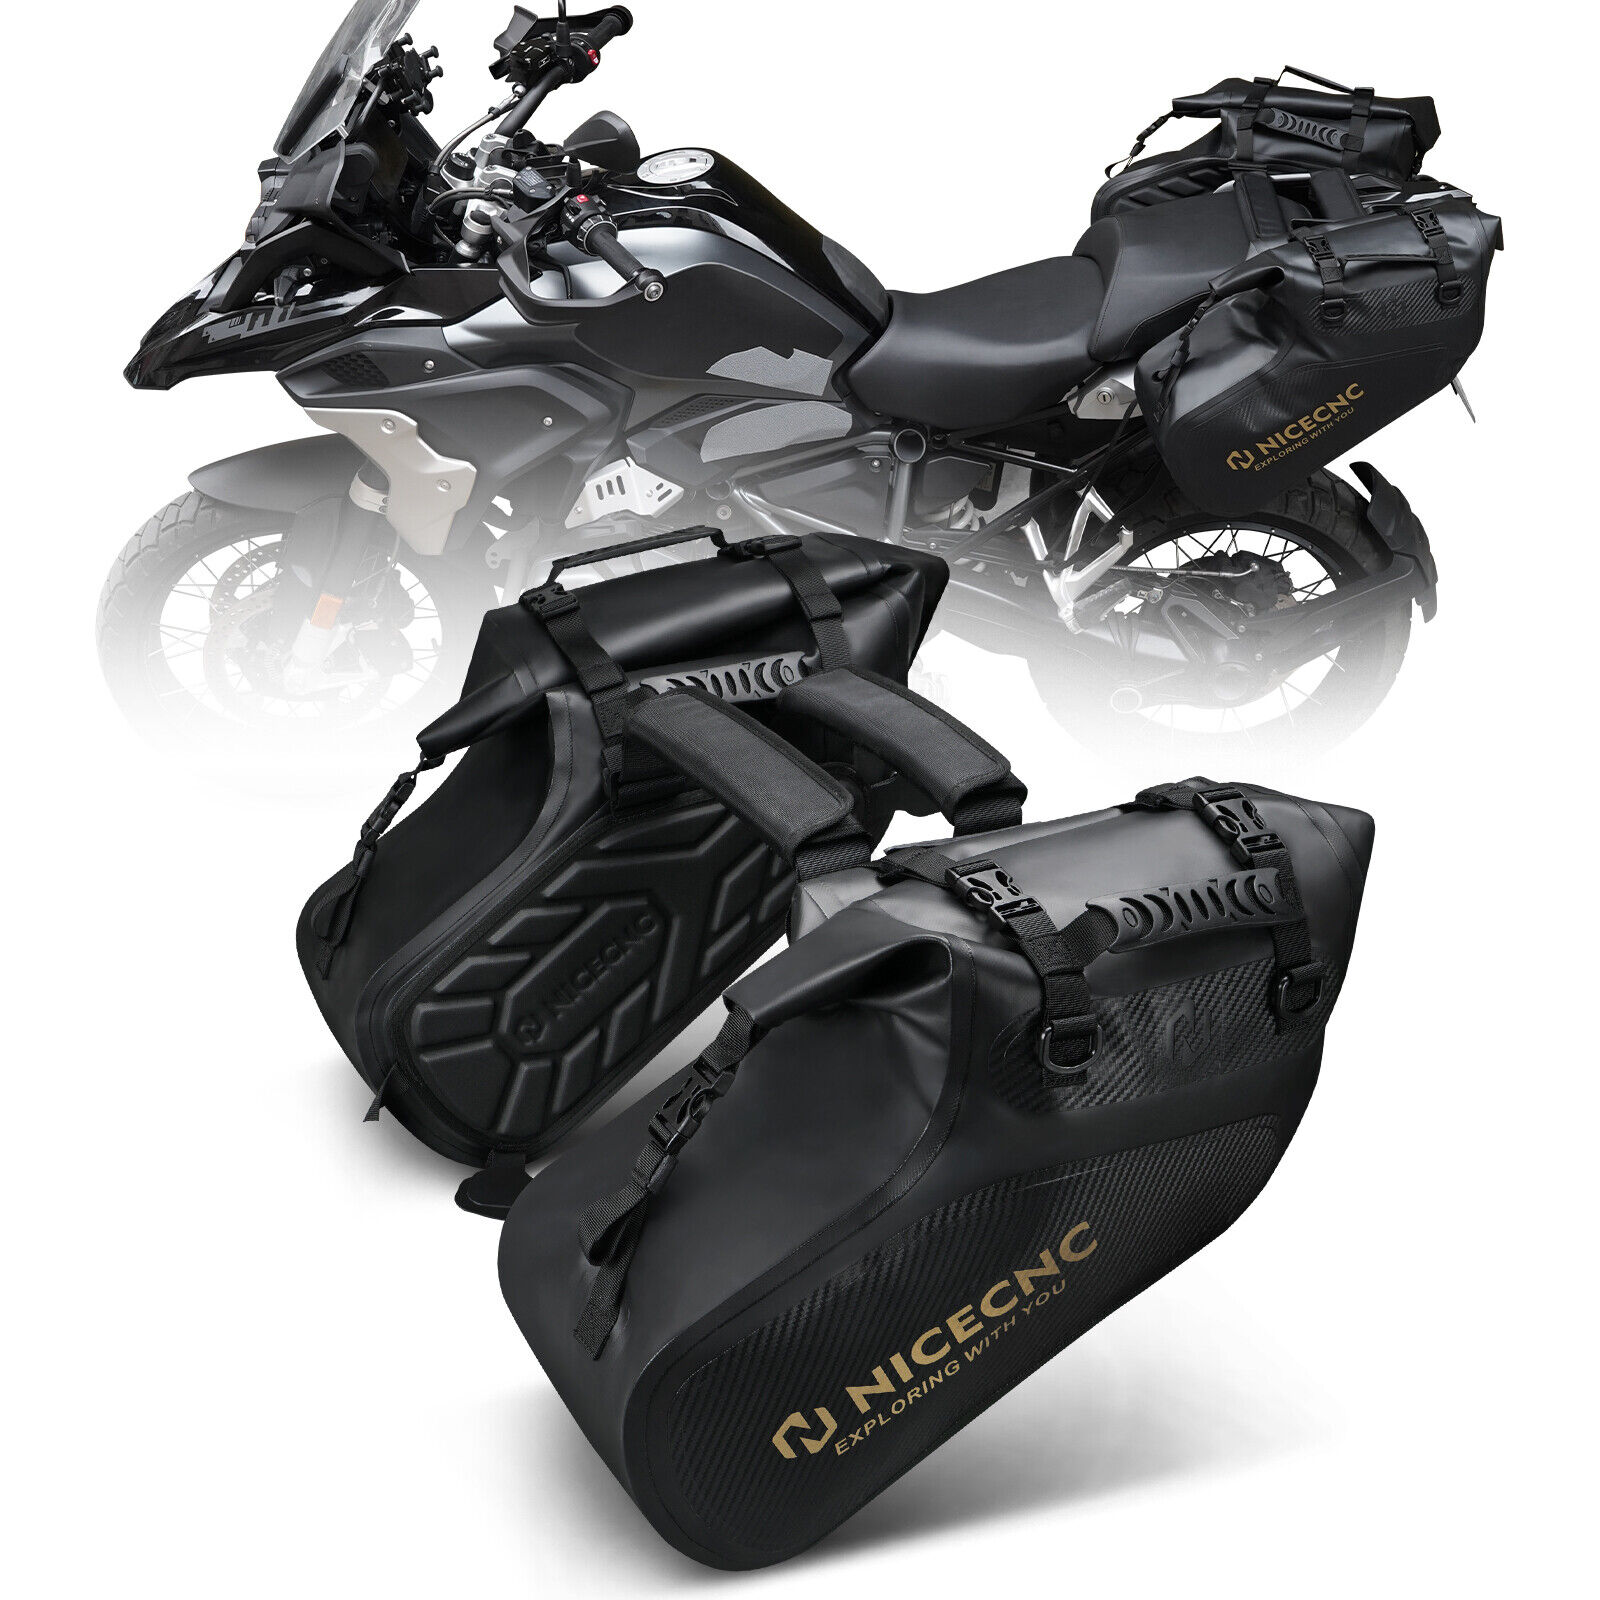 28L Pair Enduro Dual Sport Motorcycle Saddlebags Rear Side Bags Black Waterproof